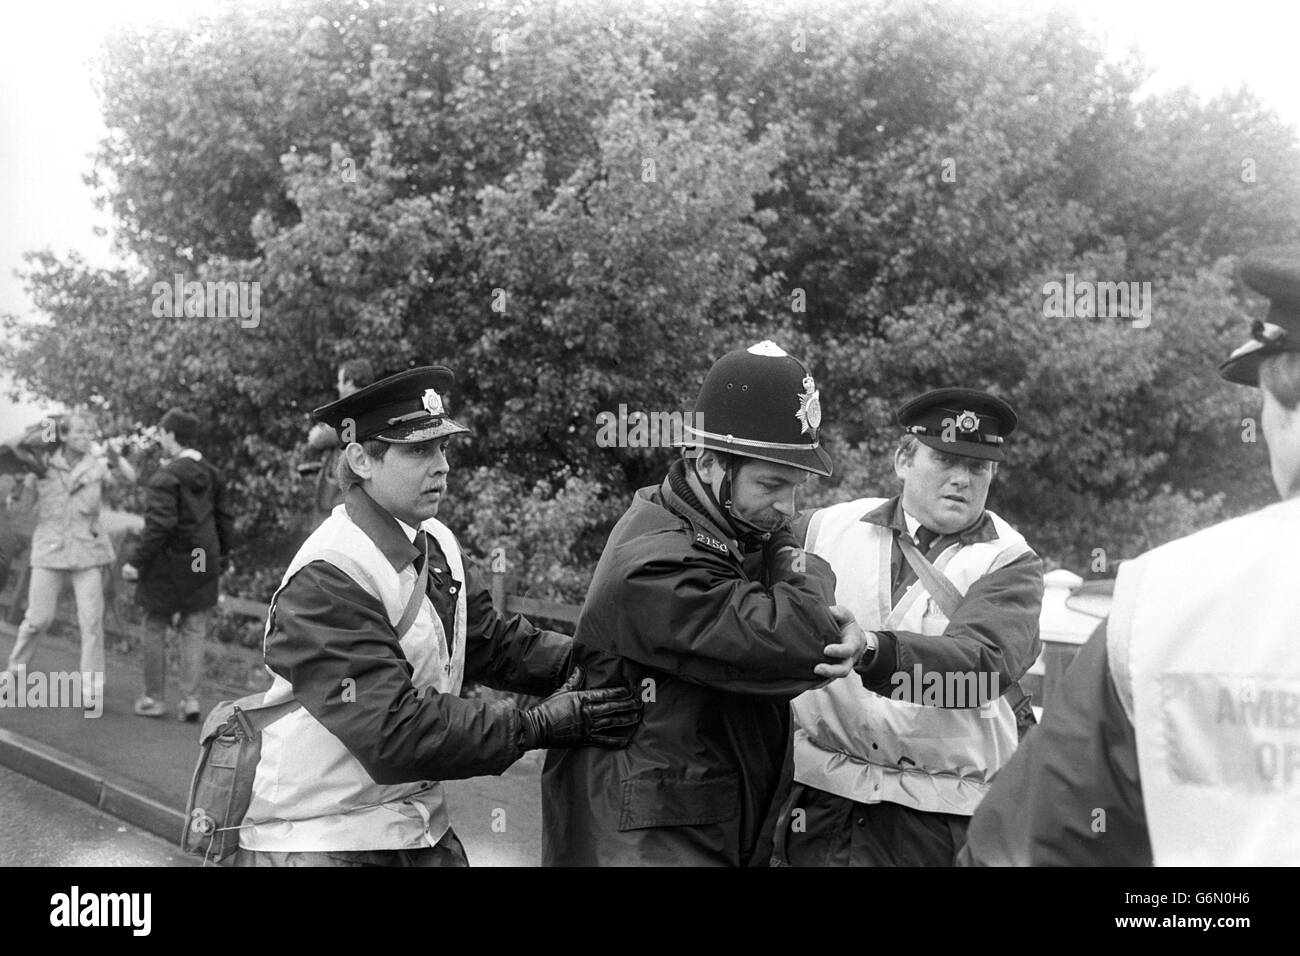 Los médicos ayudan a un policía herido, ya que estalló más violencia en la planta de coque de Orgreave, cerca de Rotherham, durante enfrentamientos con mineros en picketes. Foto de stock